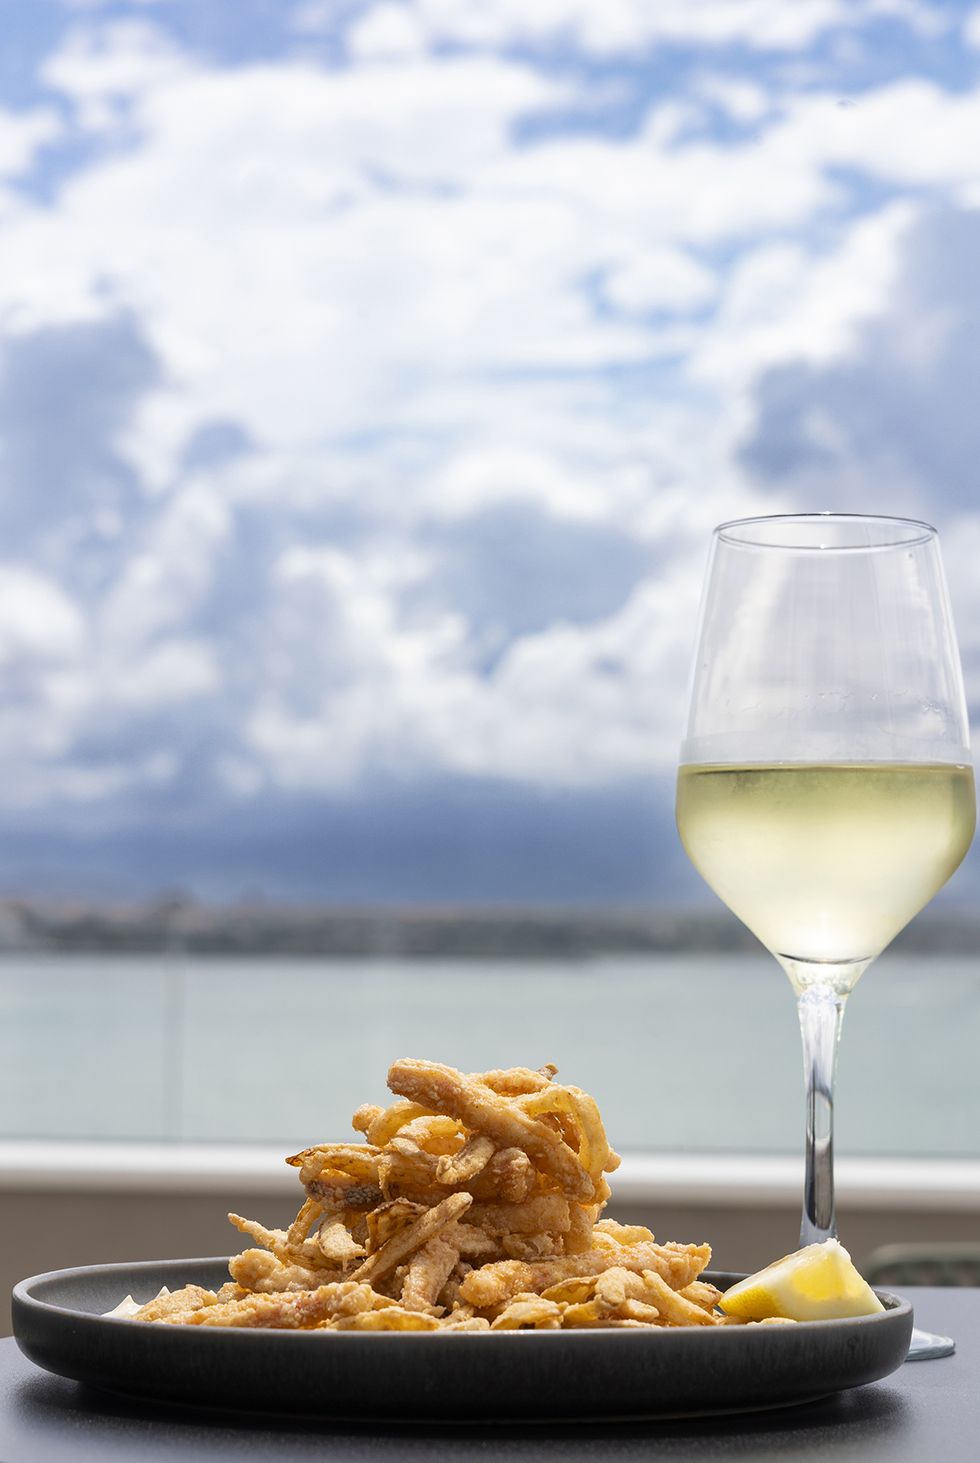 rabas de calamar, del restaurante la terraza de santander